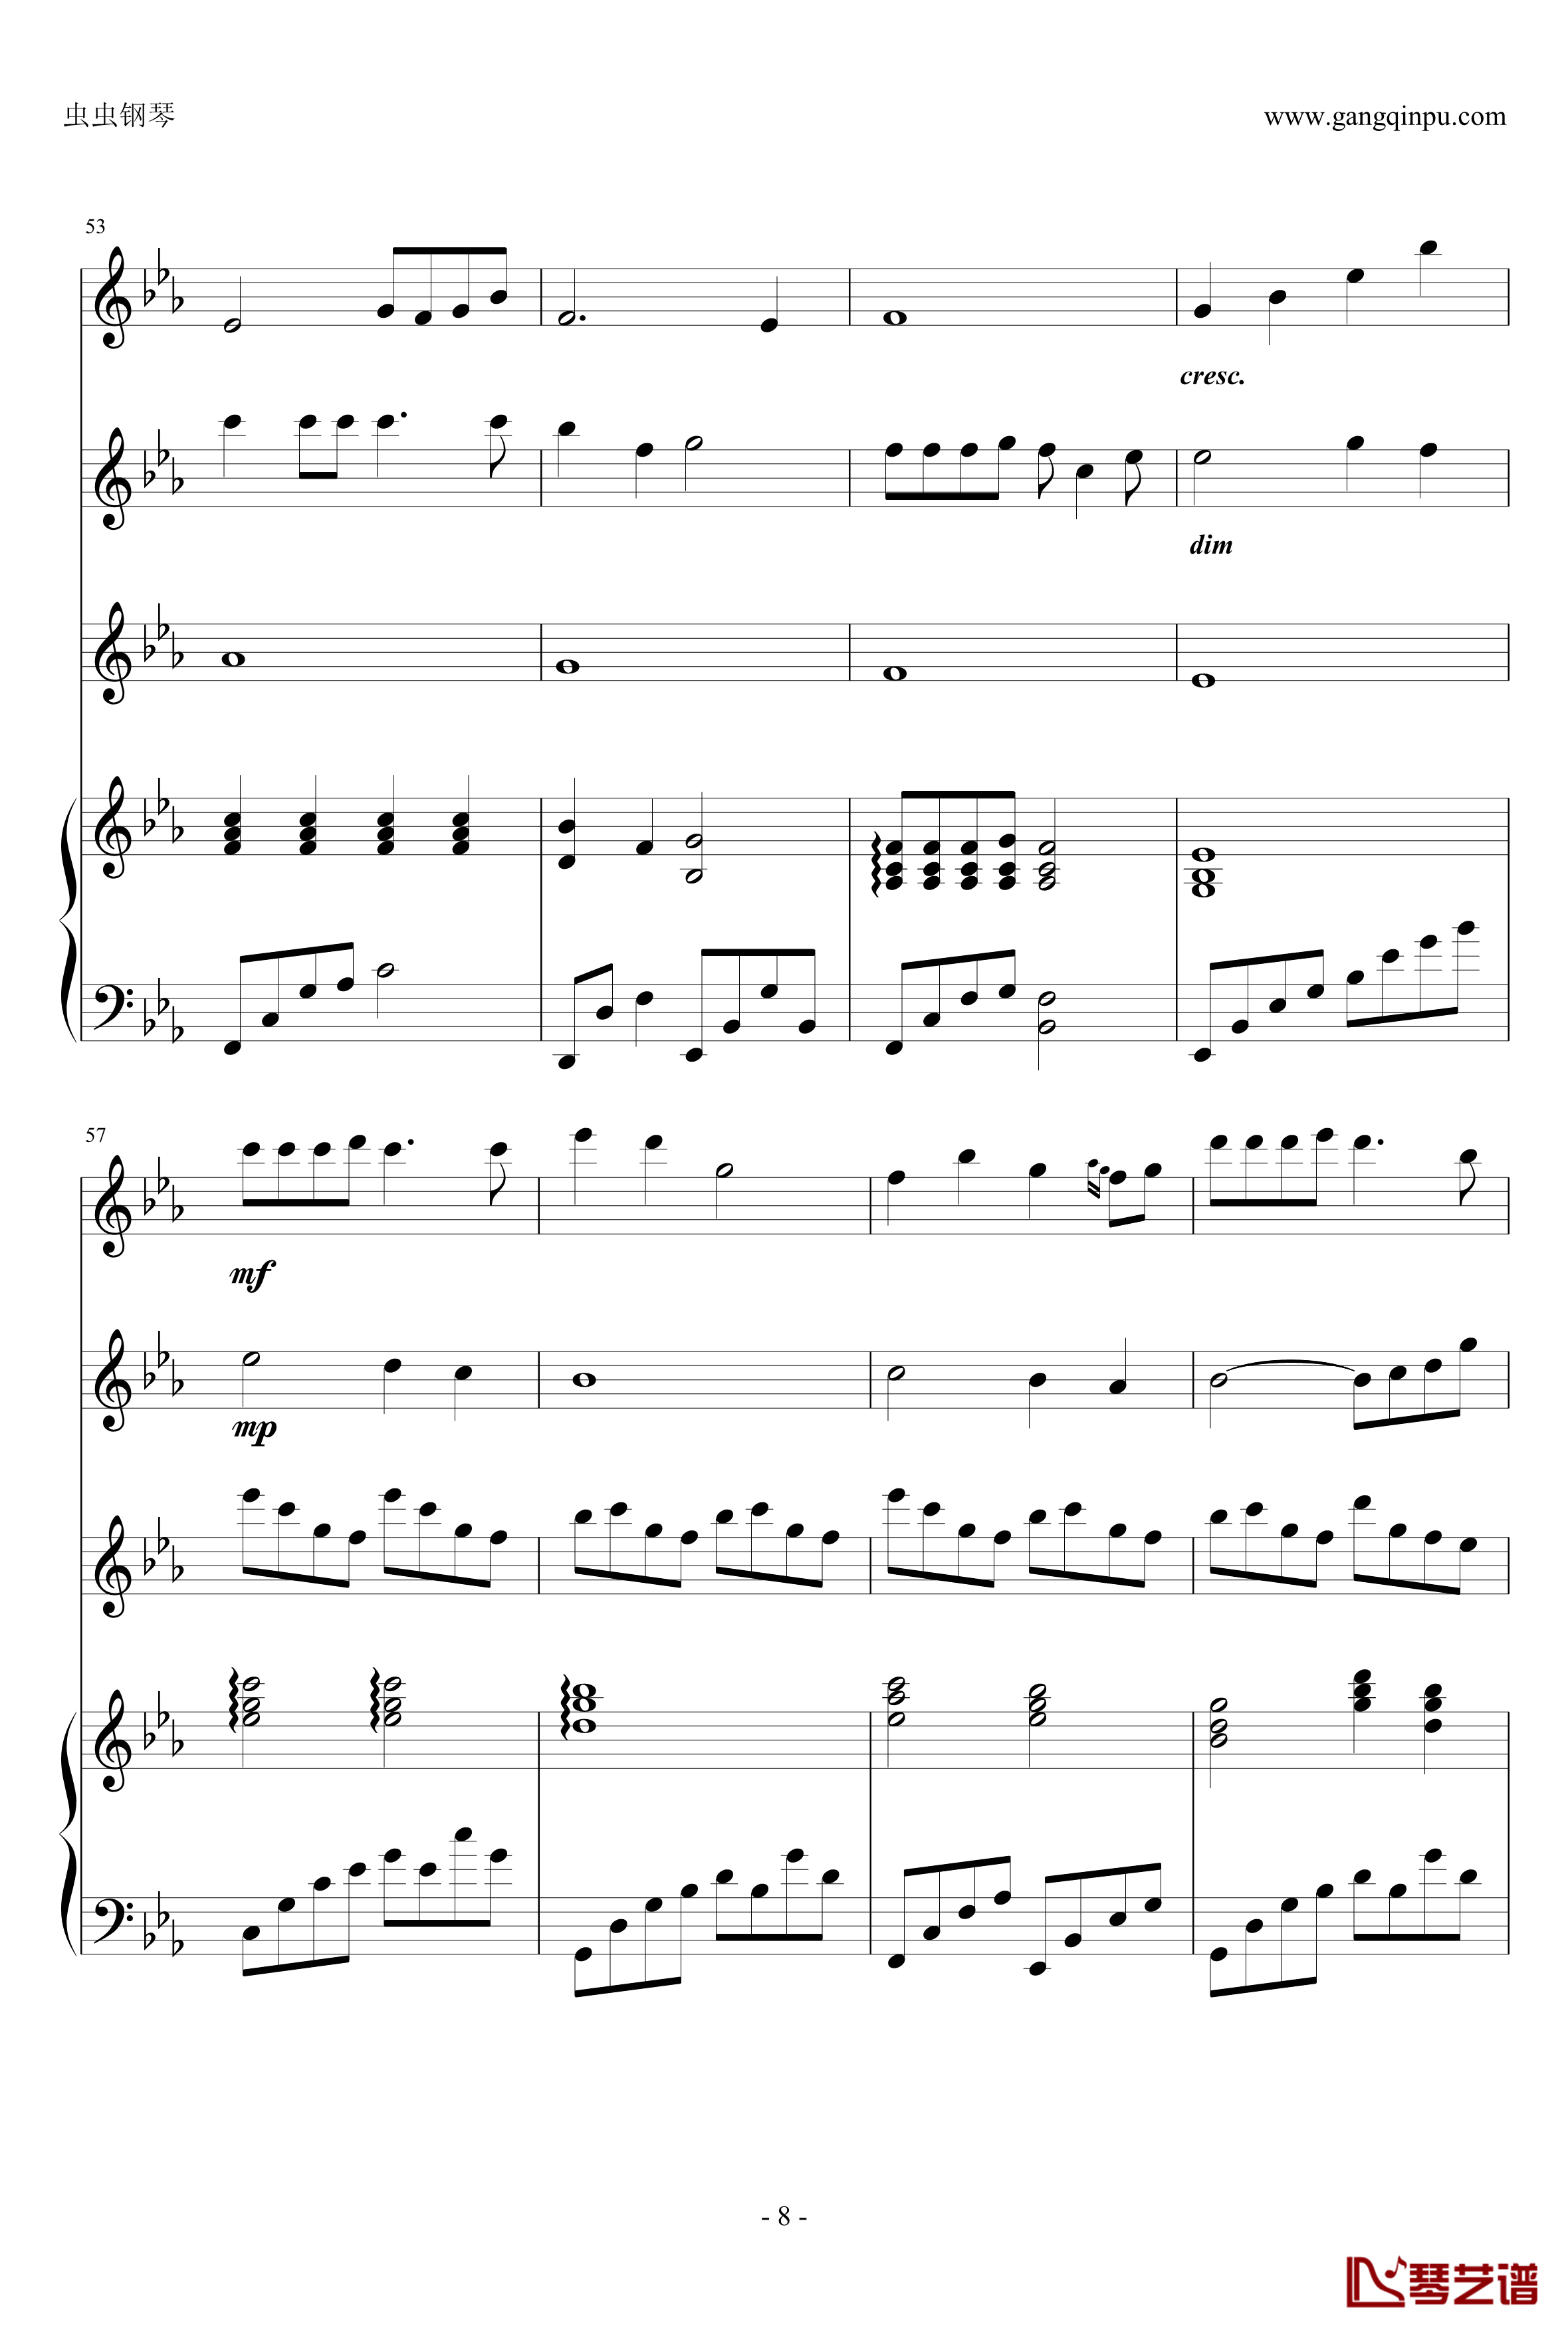 幽灵公主钢琴谱-合奏版总谱-二胡、古筝、小提琴、钢琴-久石让8